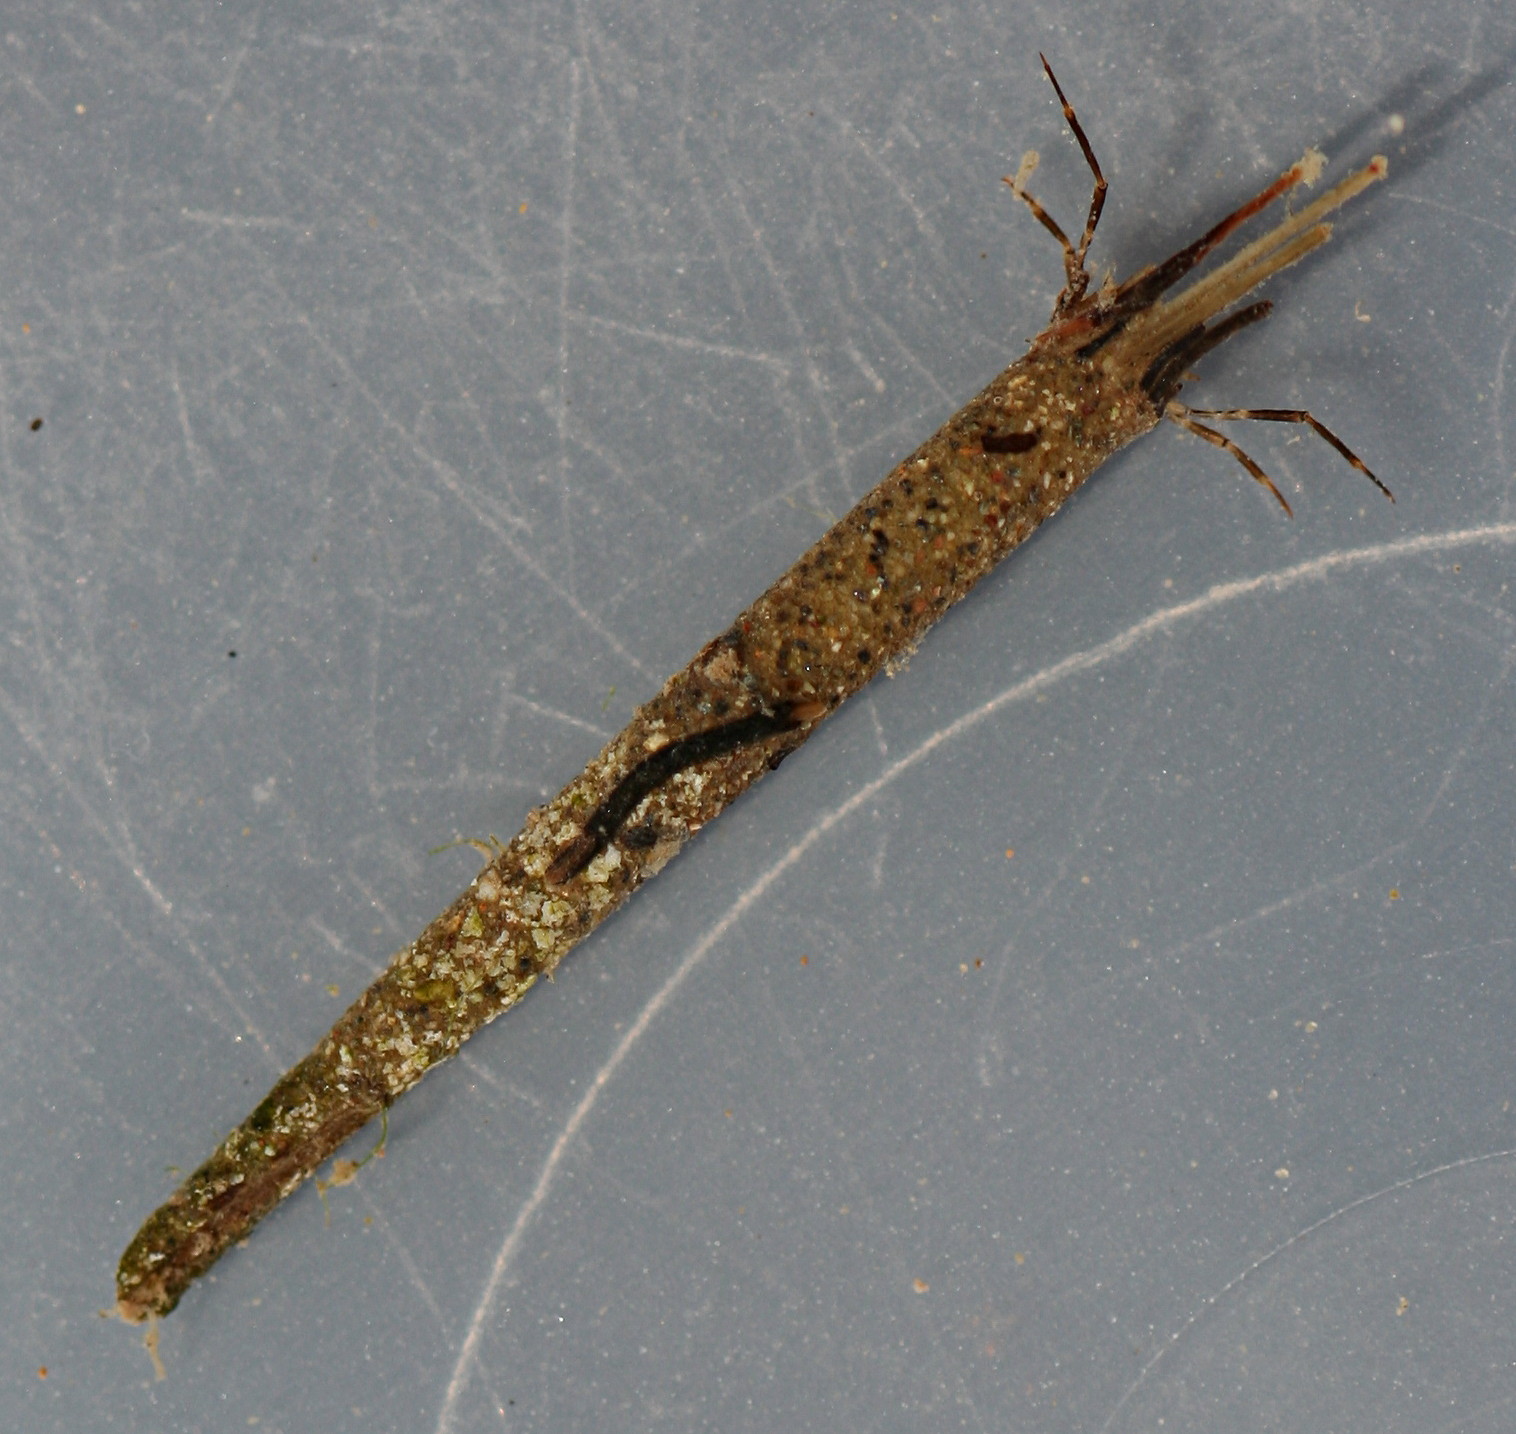 Larva 13 mm. Case 25mm